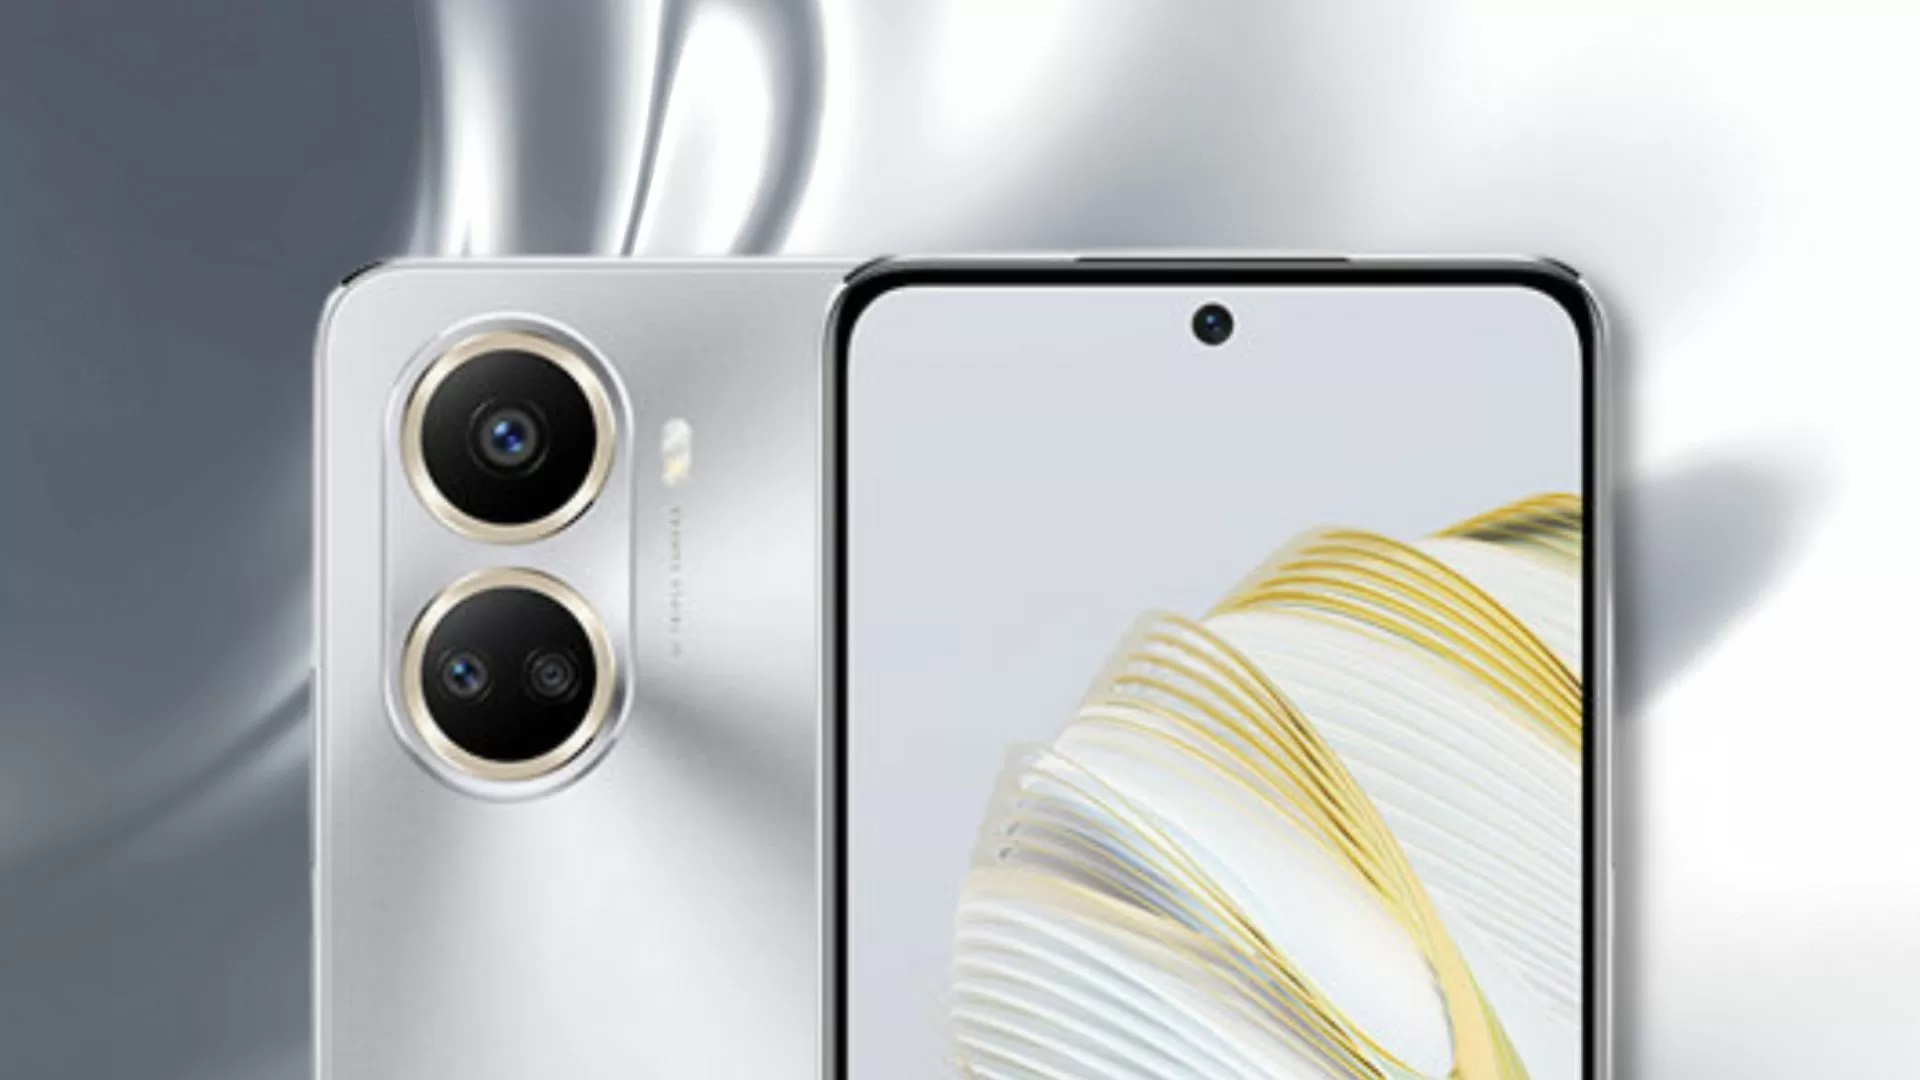 Huawei odsłania smartfon Nova 10 SE z ładnym designem, aparatem 108 MP i ładowaniem 66 W